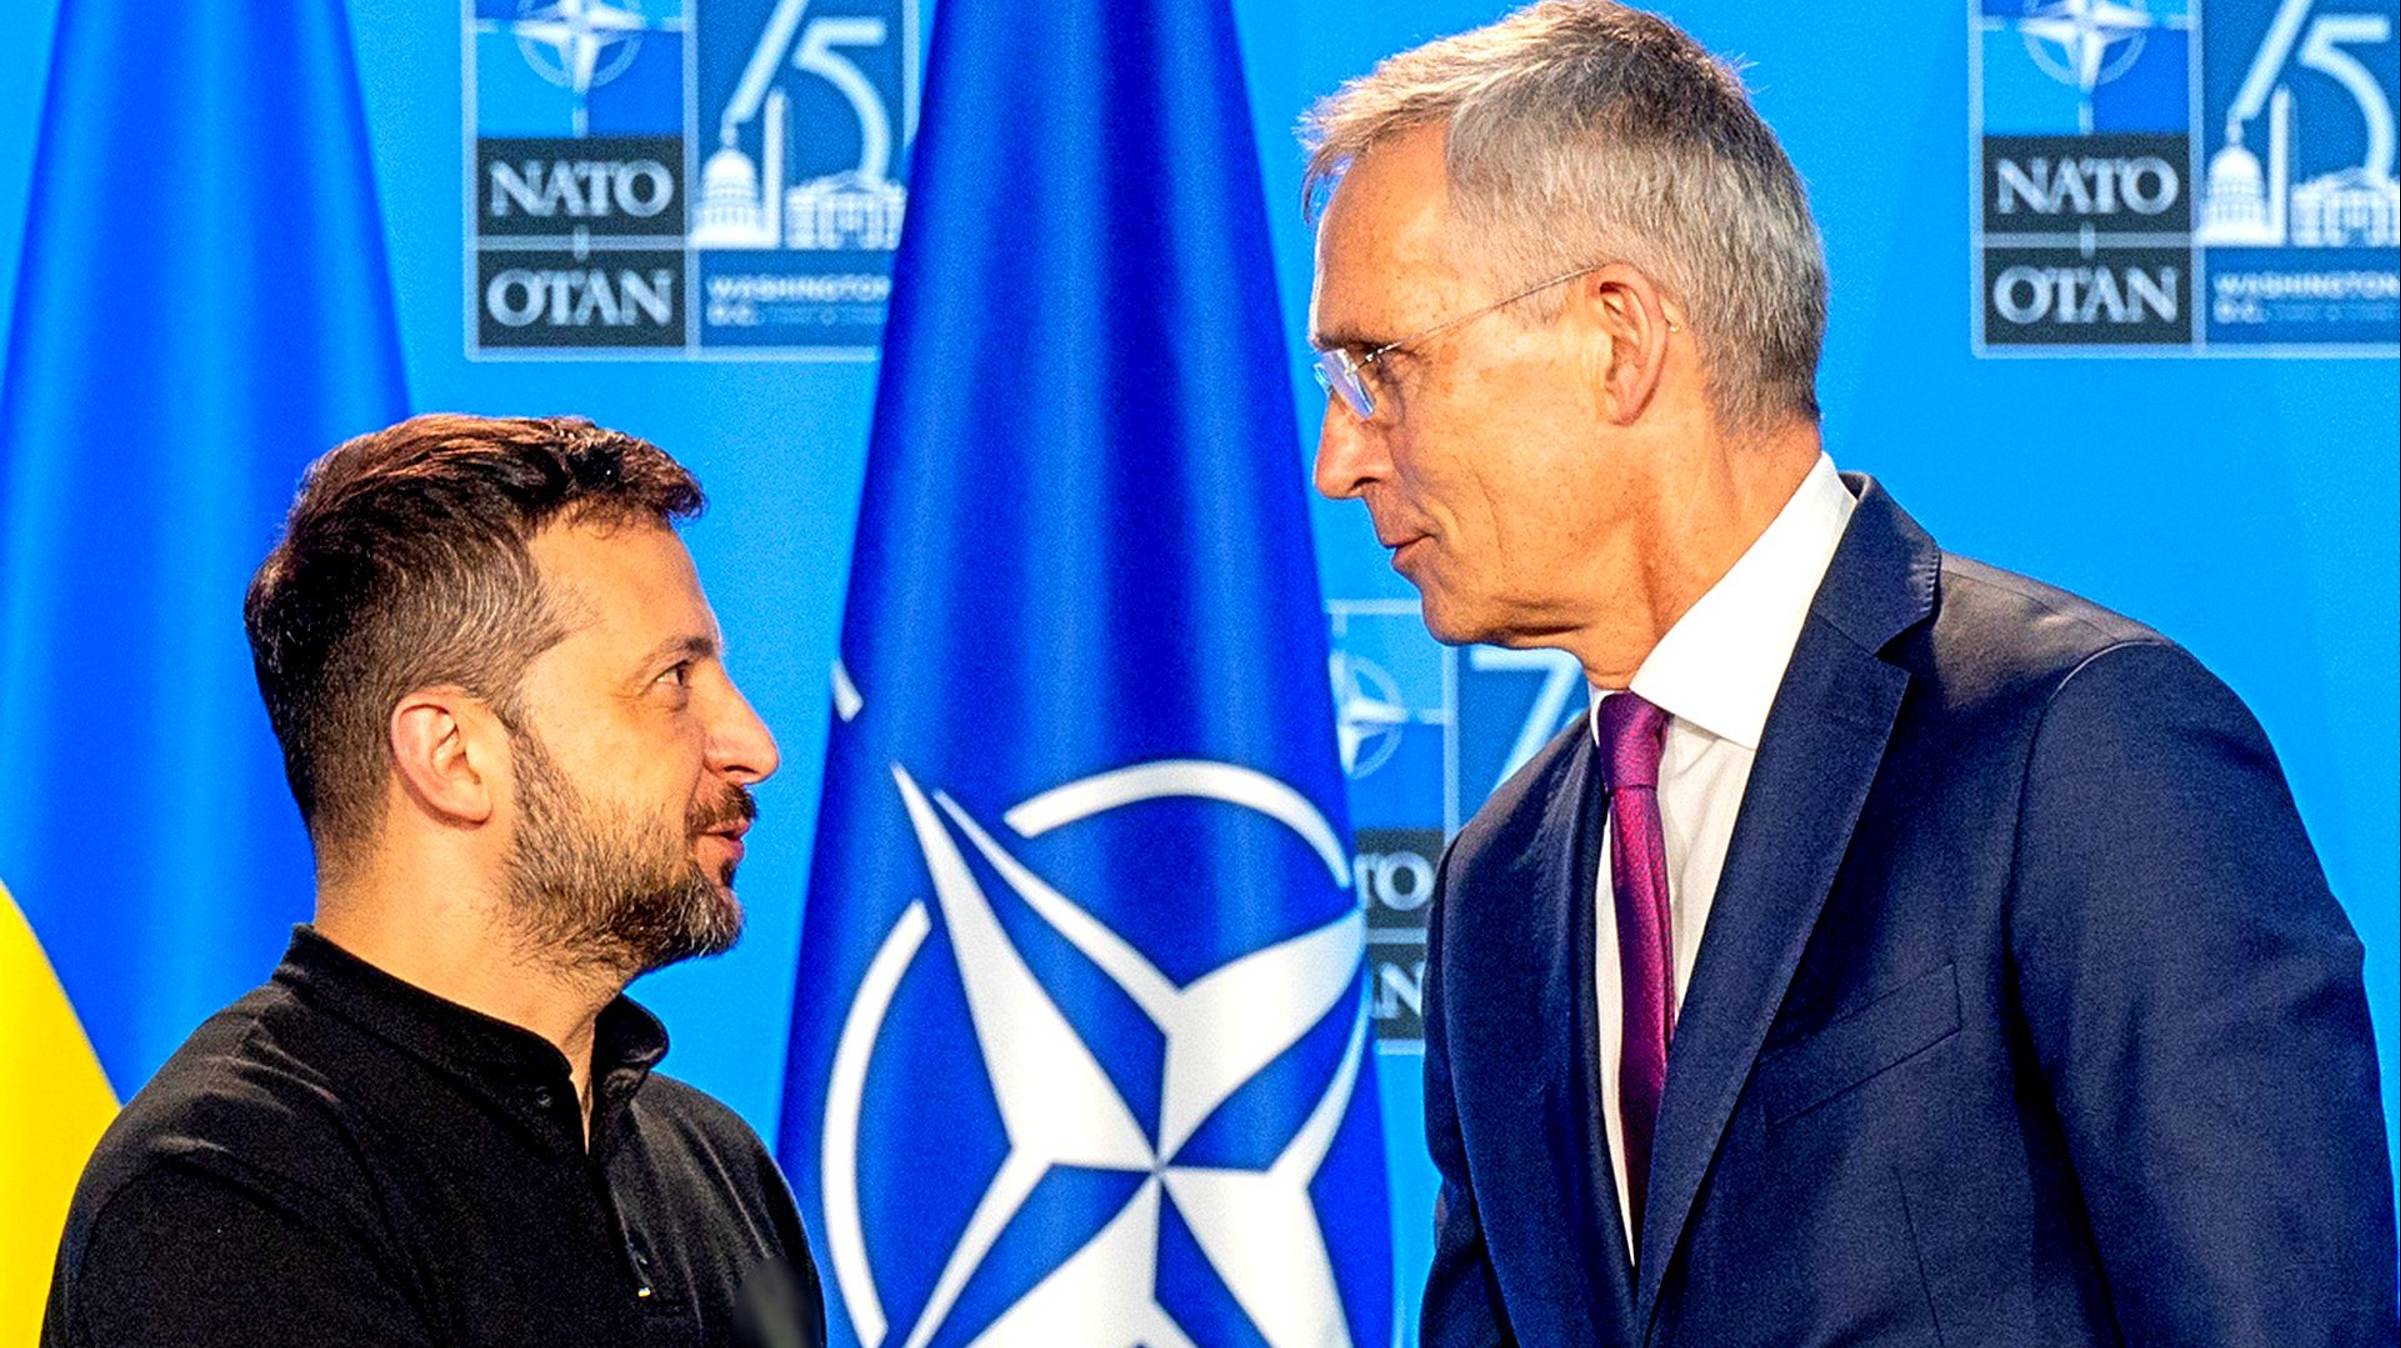 Судьбу членства Украины в НАТО при Трампе раскрыли